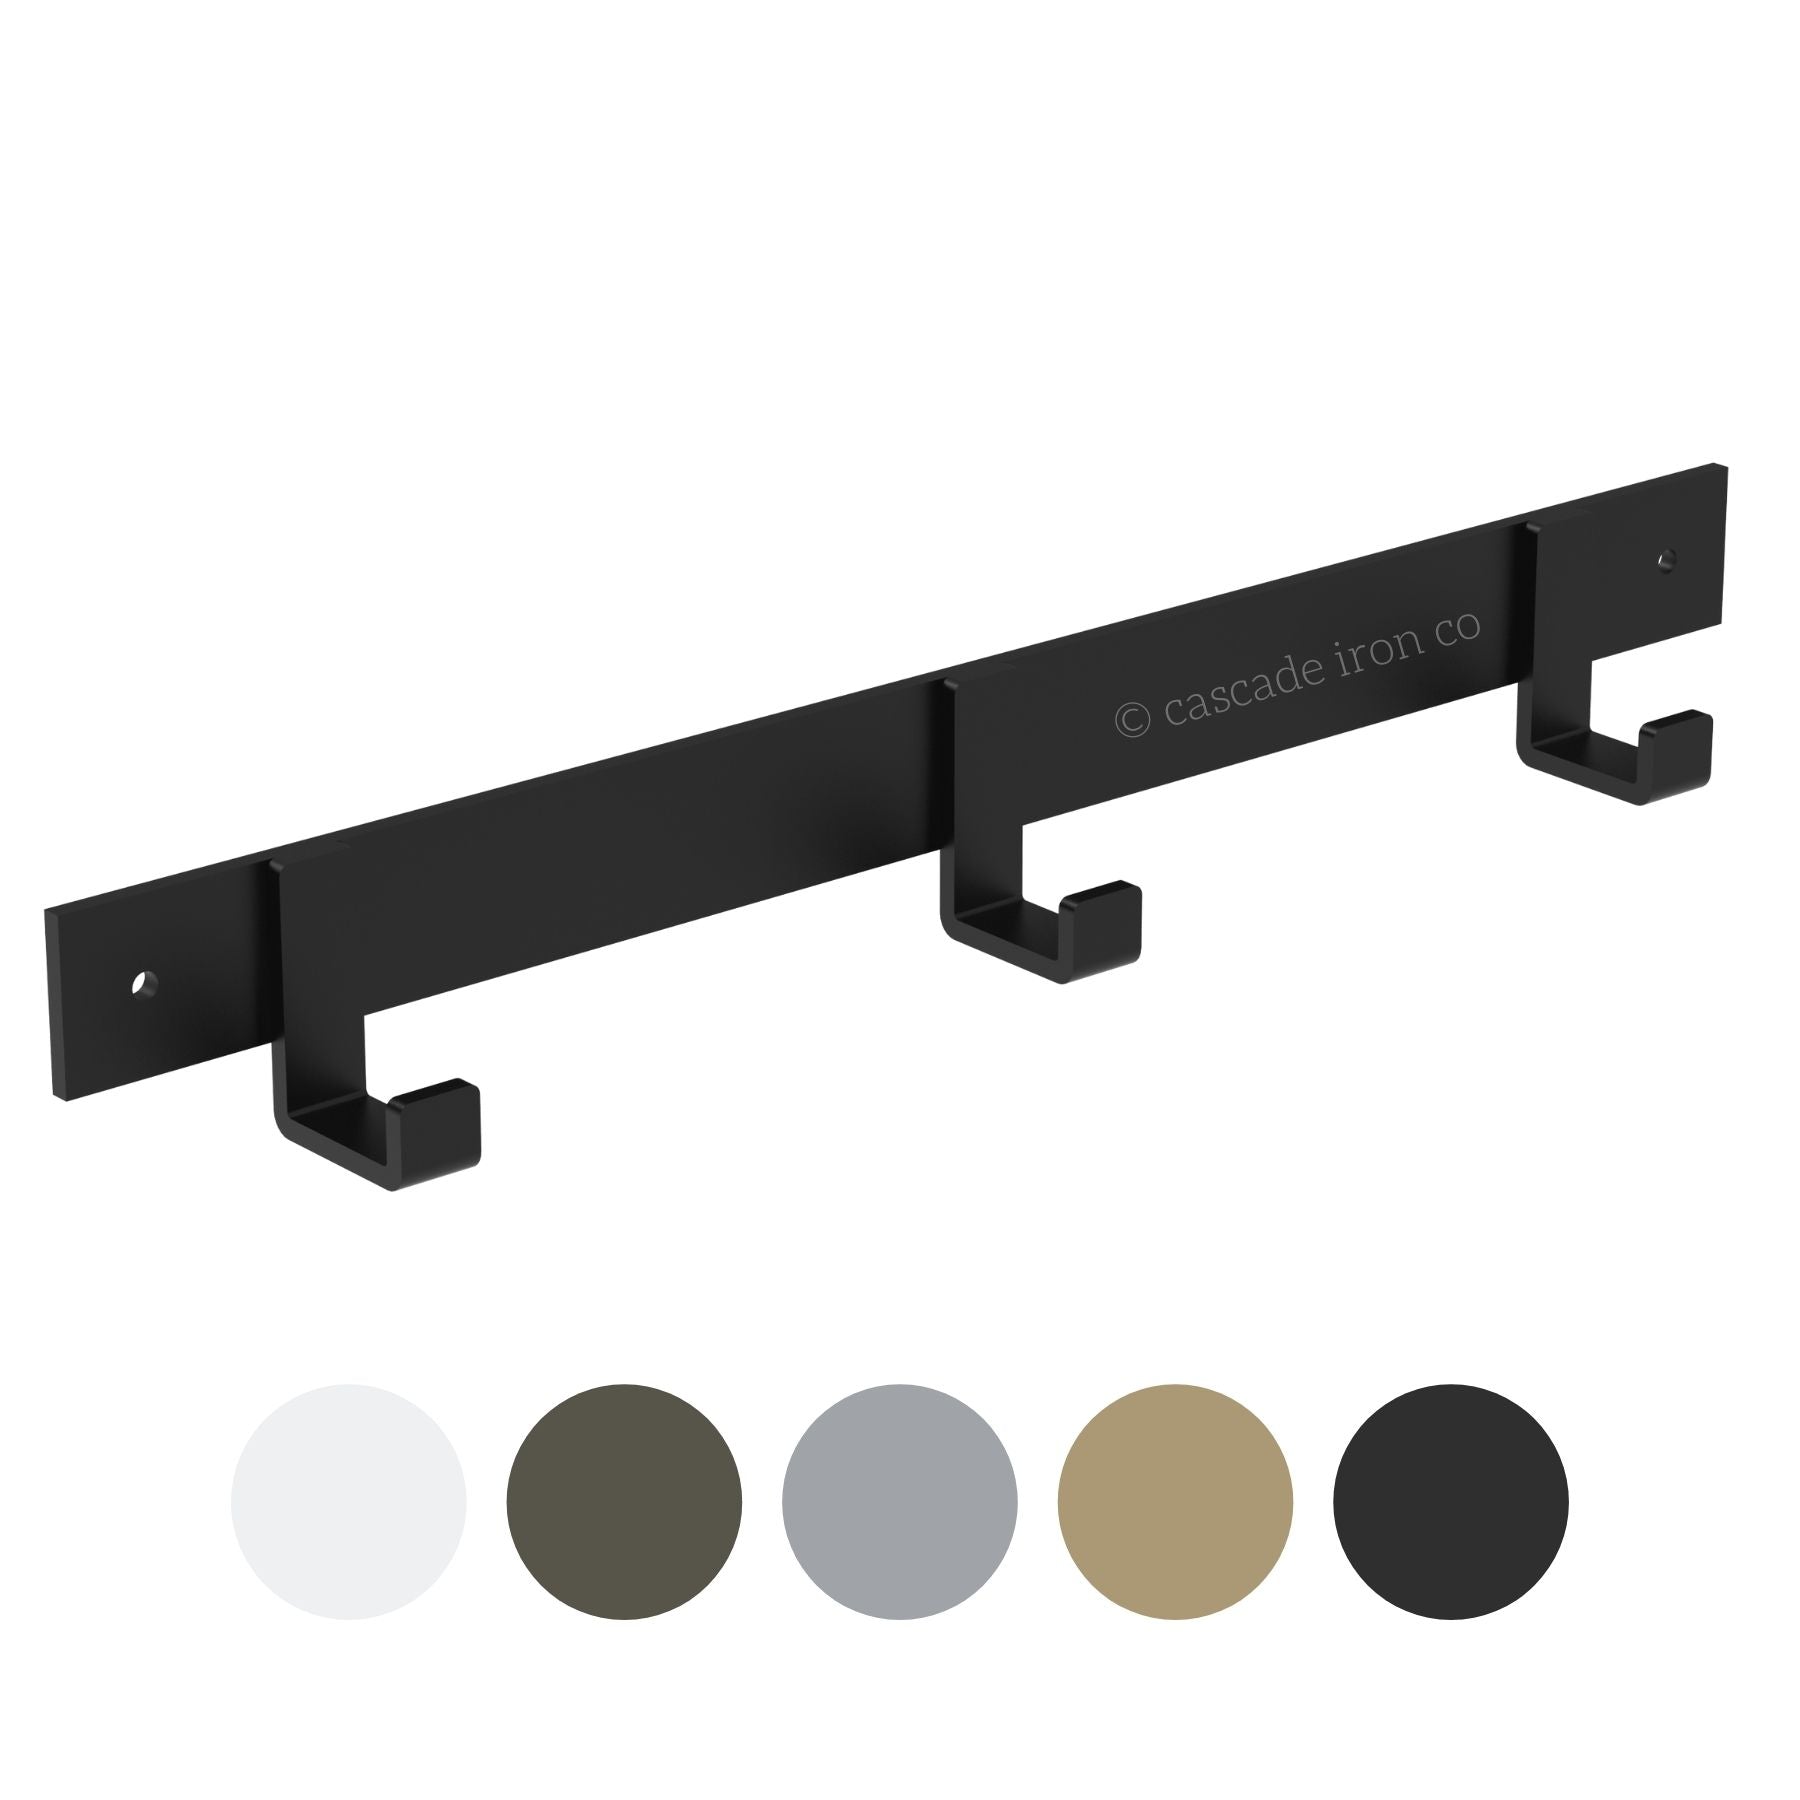 Metal Wall Hook - Black, Brass, Steel, & Silver, White - Cascade Iron Co